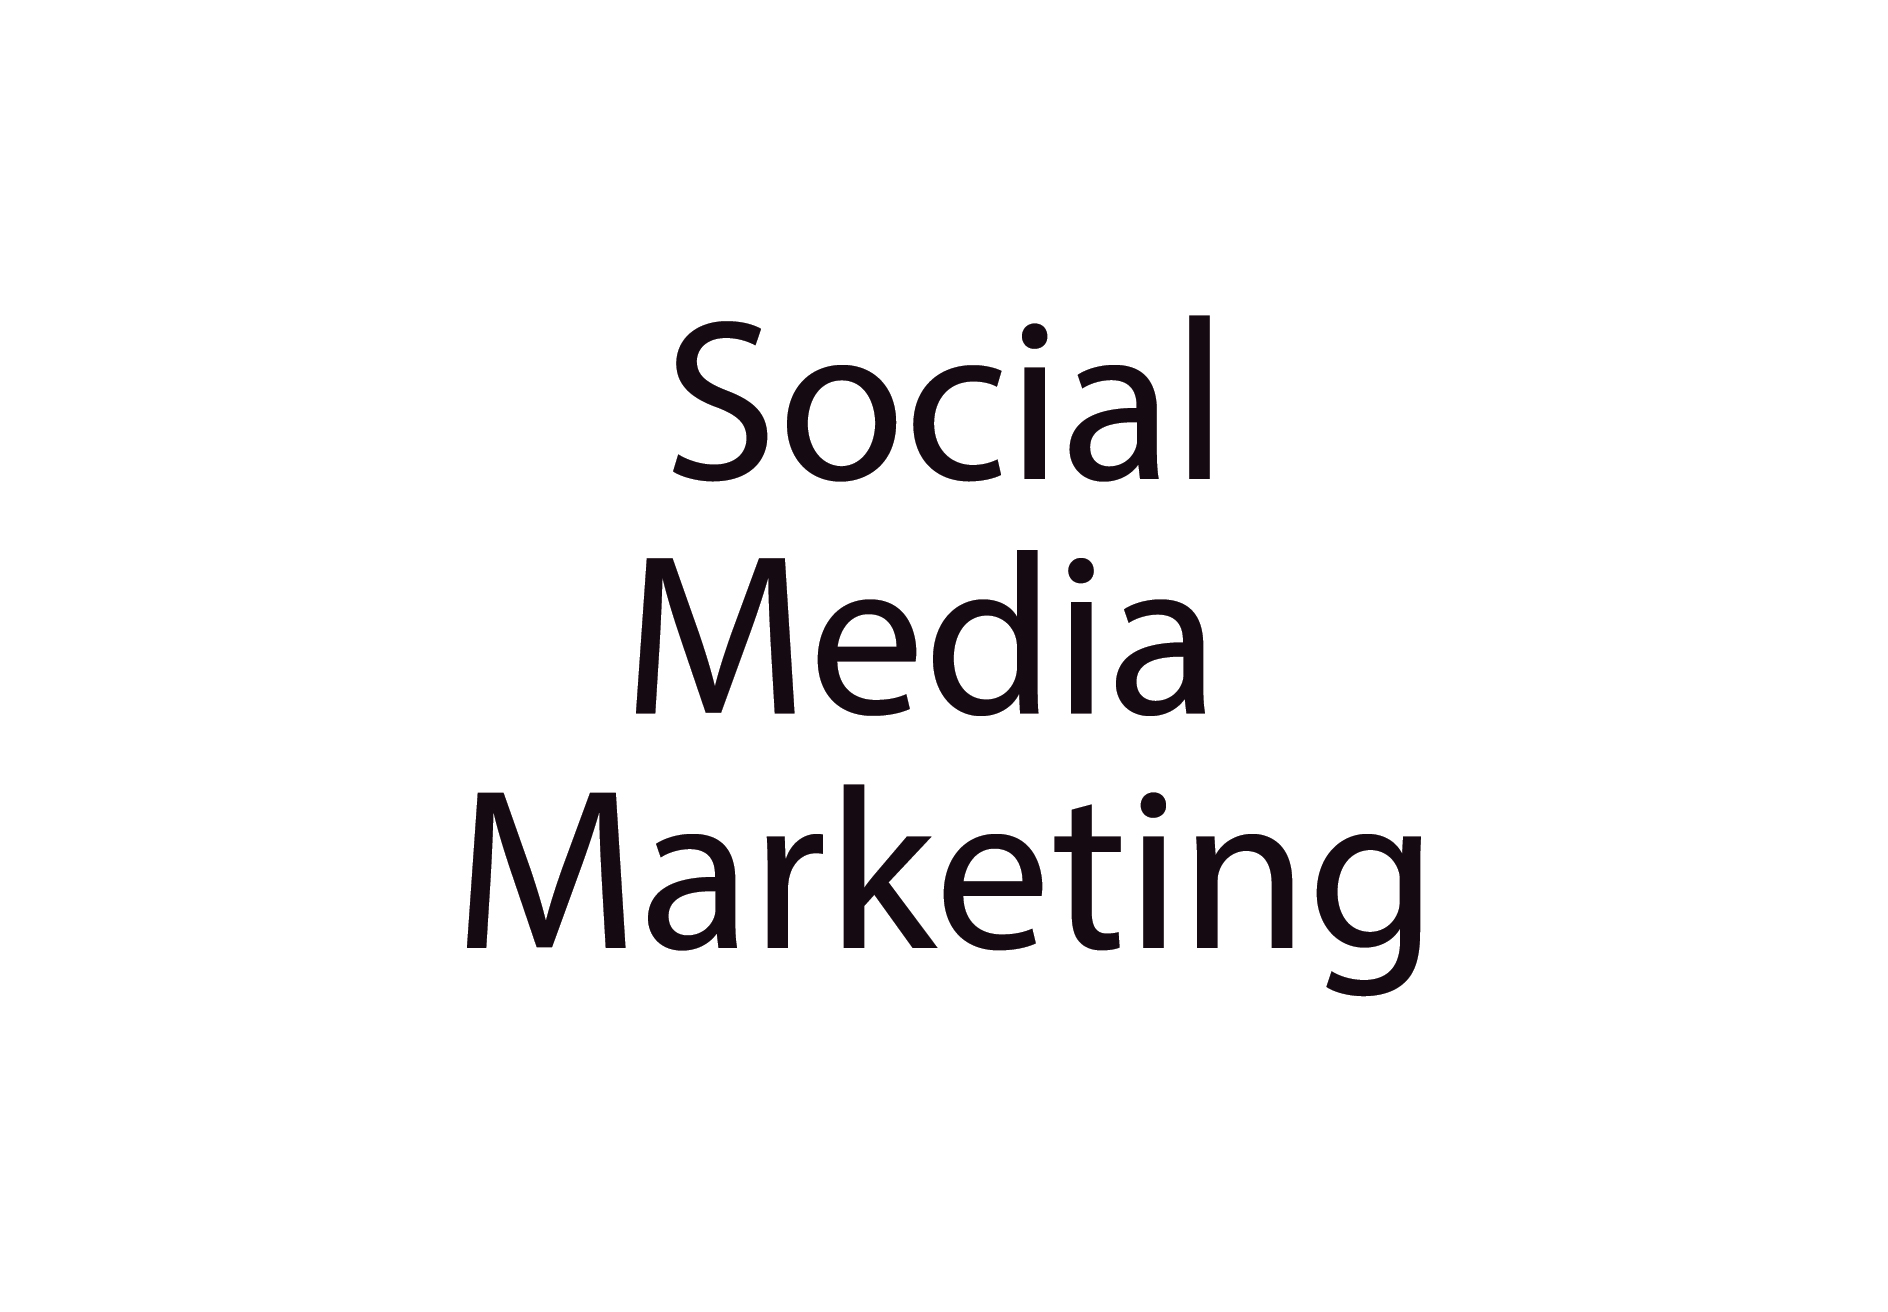 4072Social Media Marketing